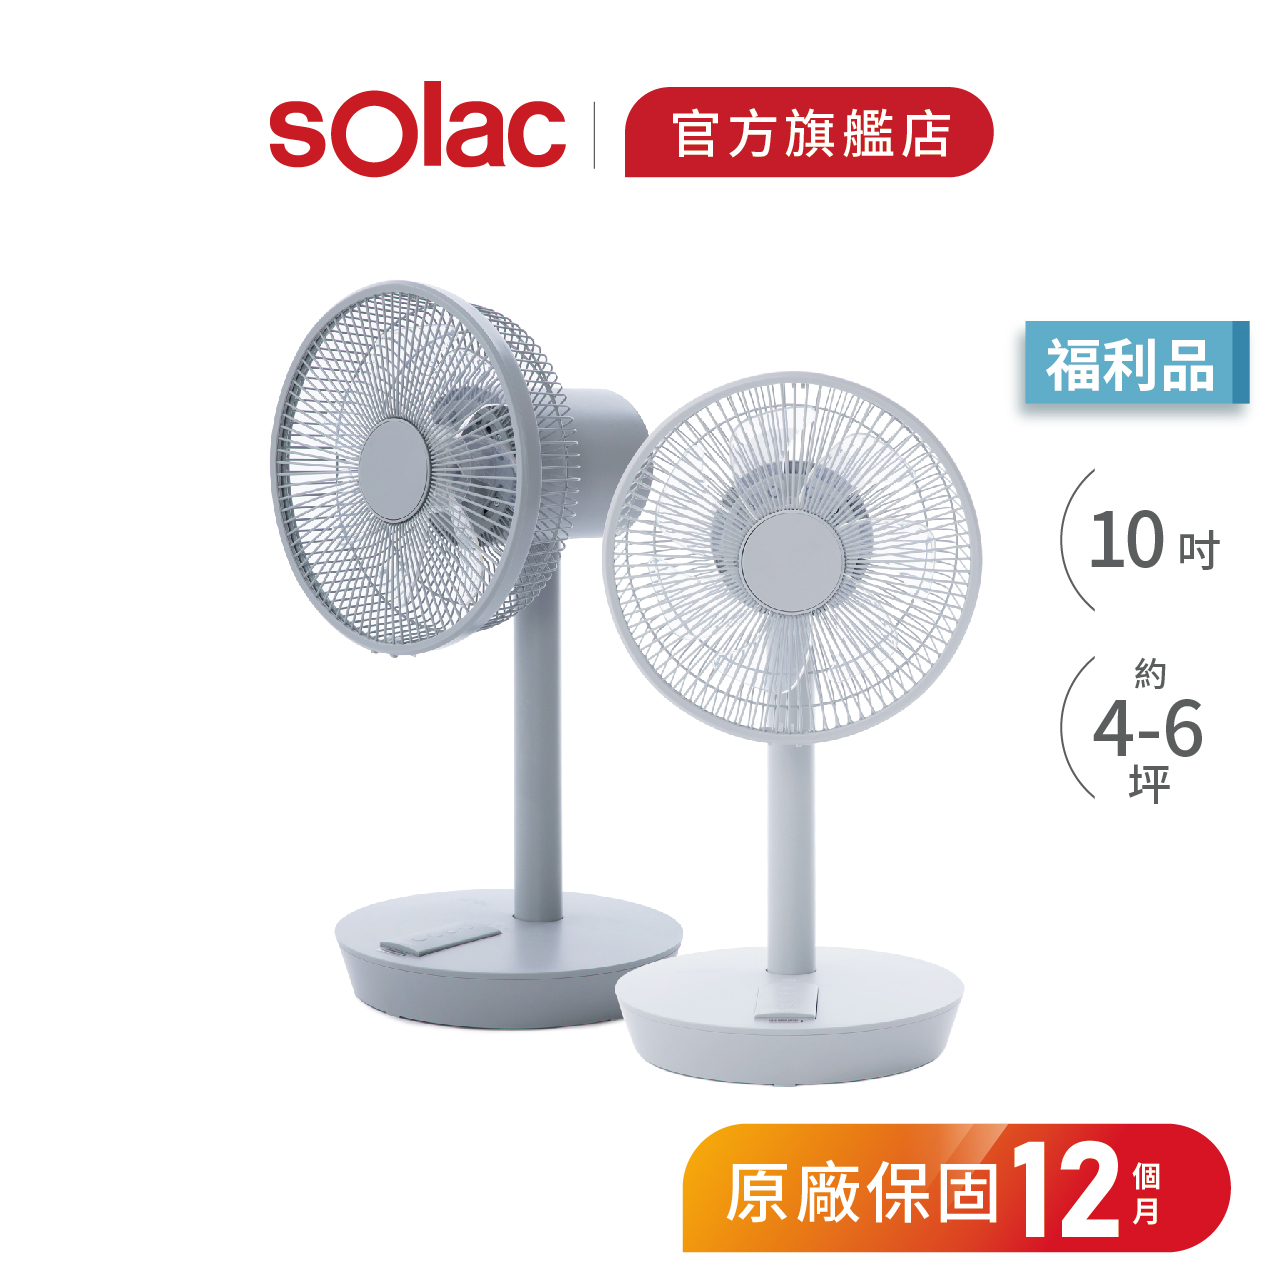 【 sOlac 】SFT-F07 10吋DC無線行動風扇 限量福利品 無線電扇 10吋風扇 循環扇 F07 電風扇